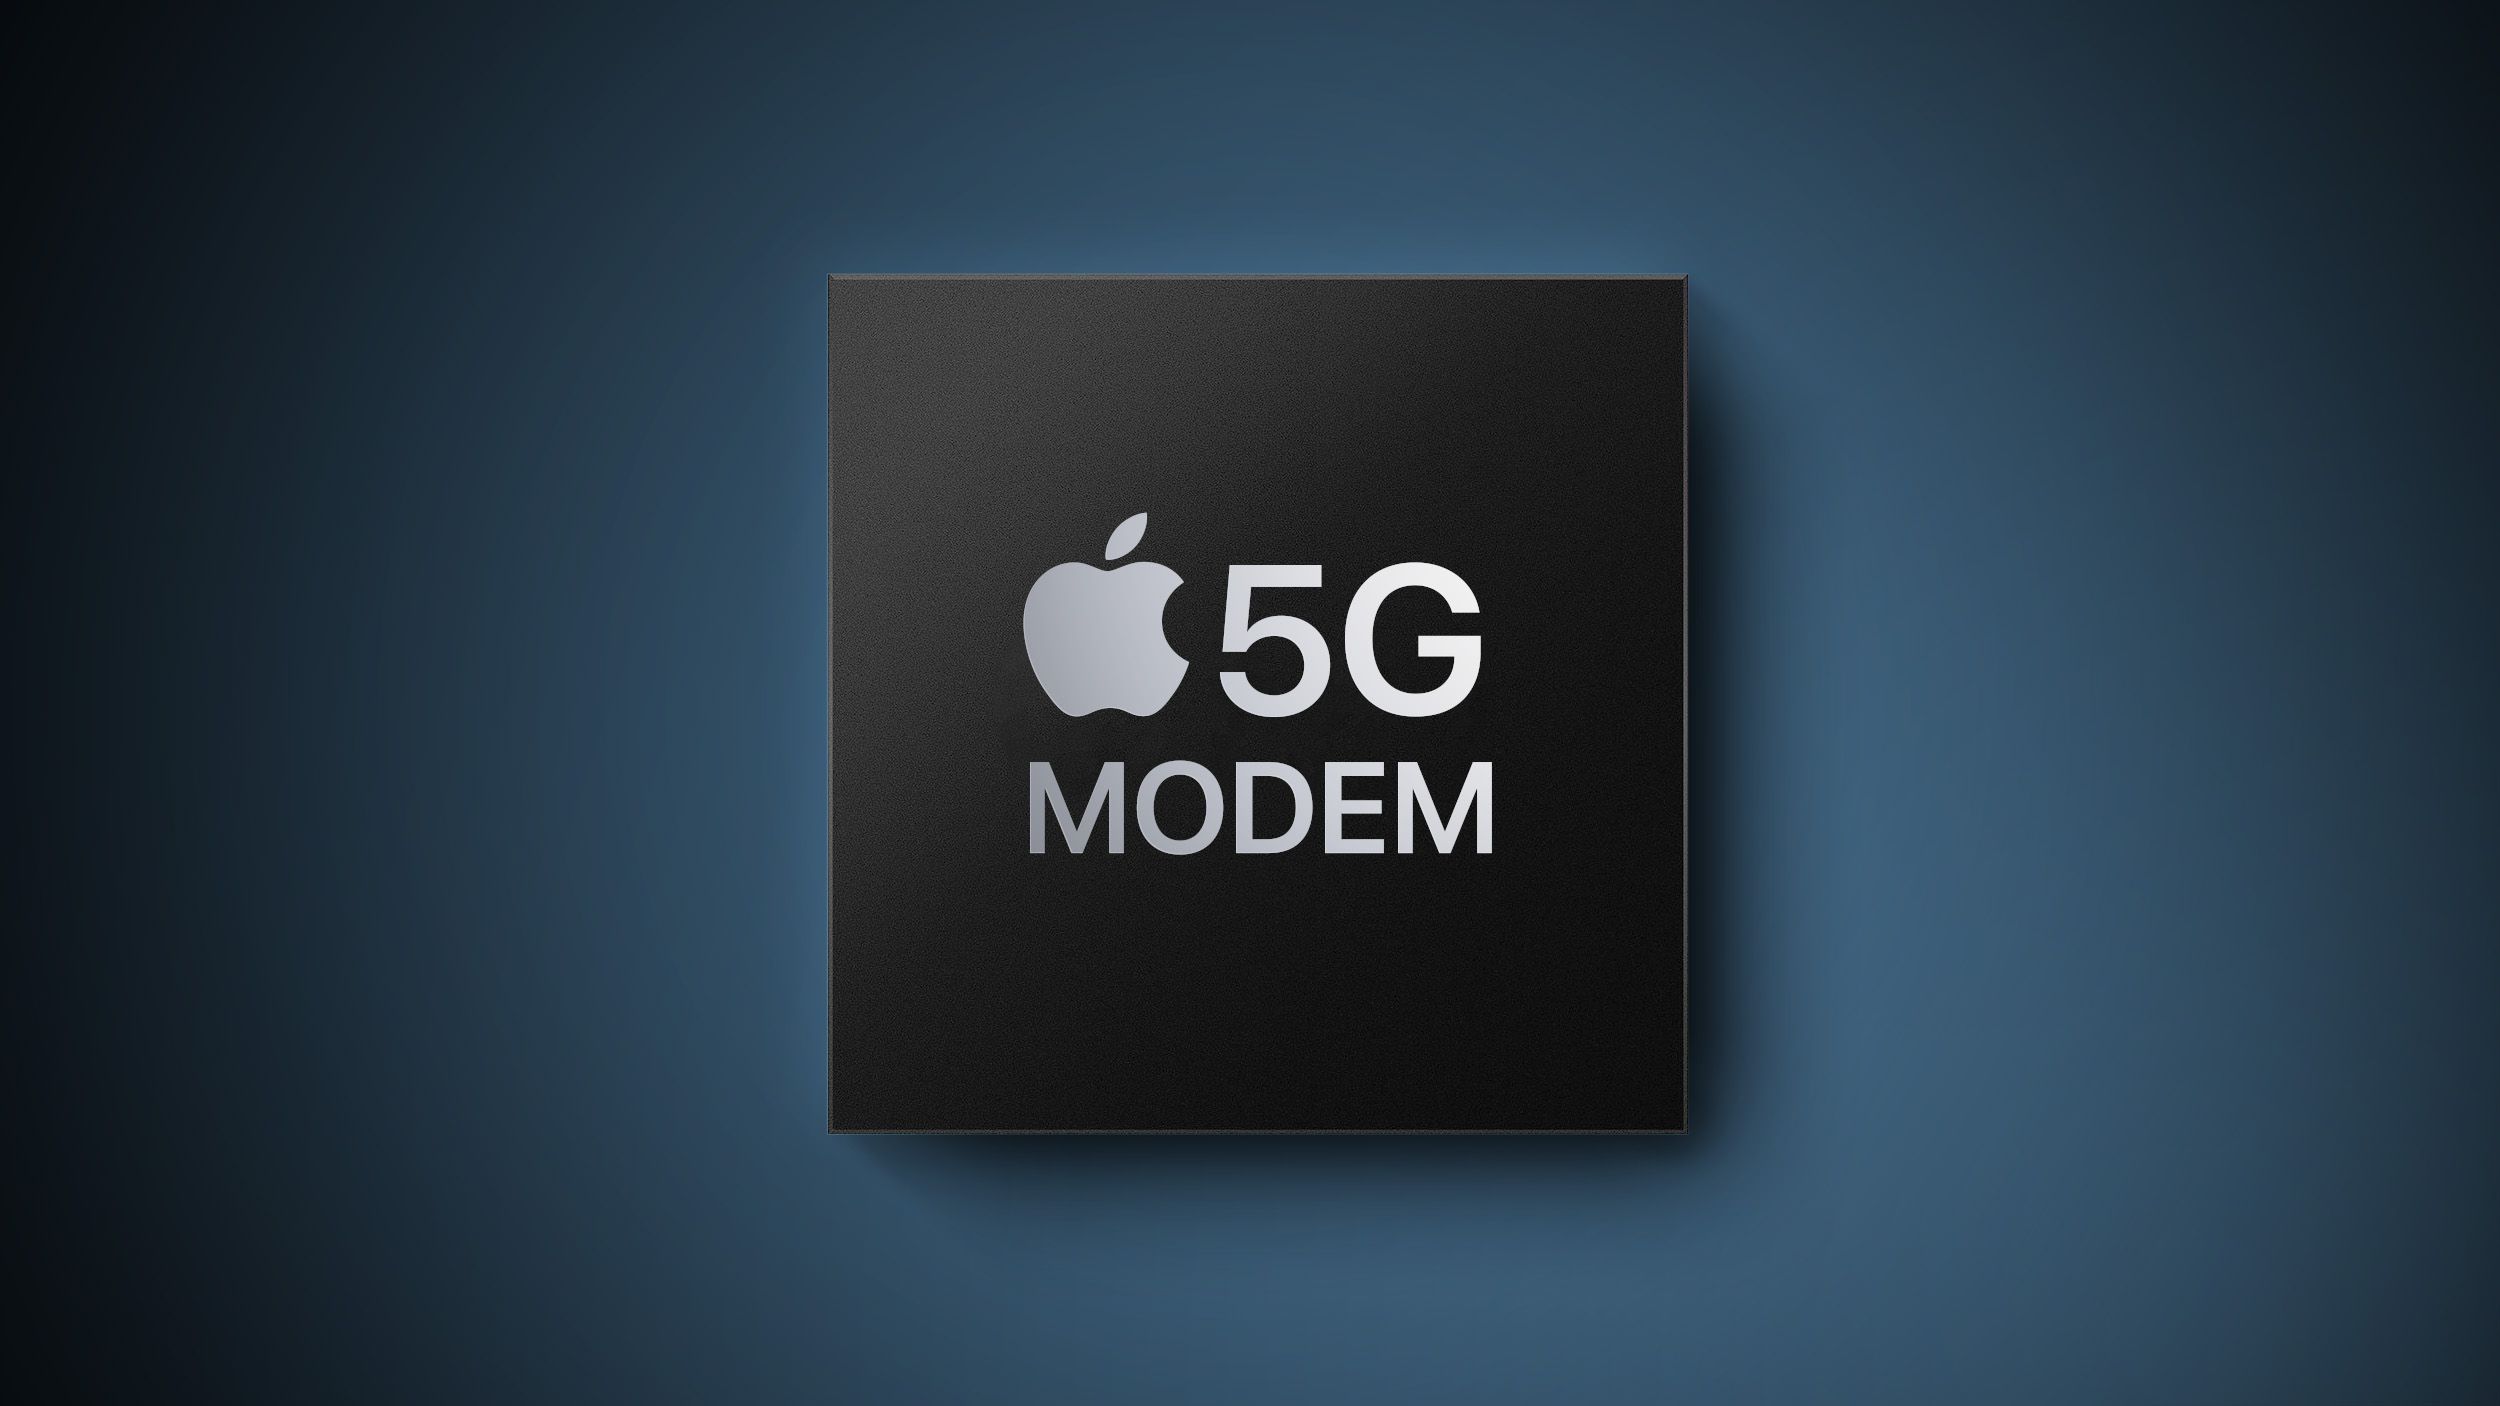 El rumoreado módem 5G de Apple para iPhone tiene proveedores compitiendo por pedidos